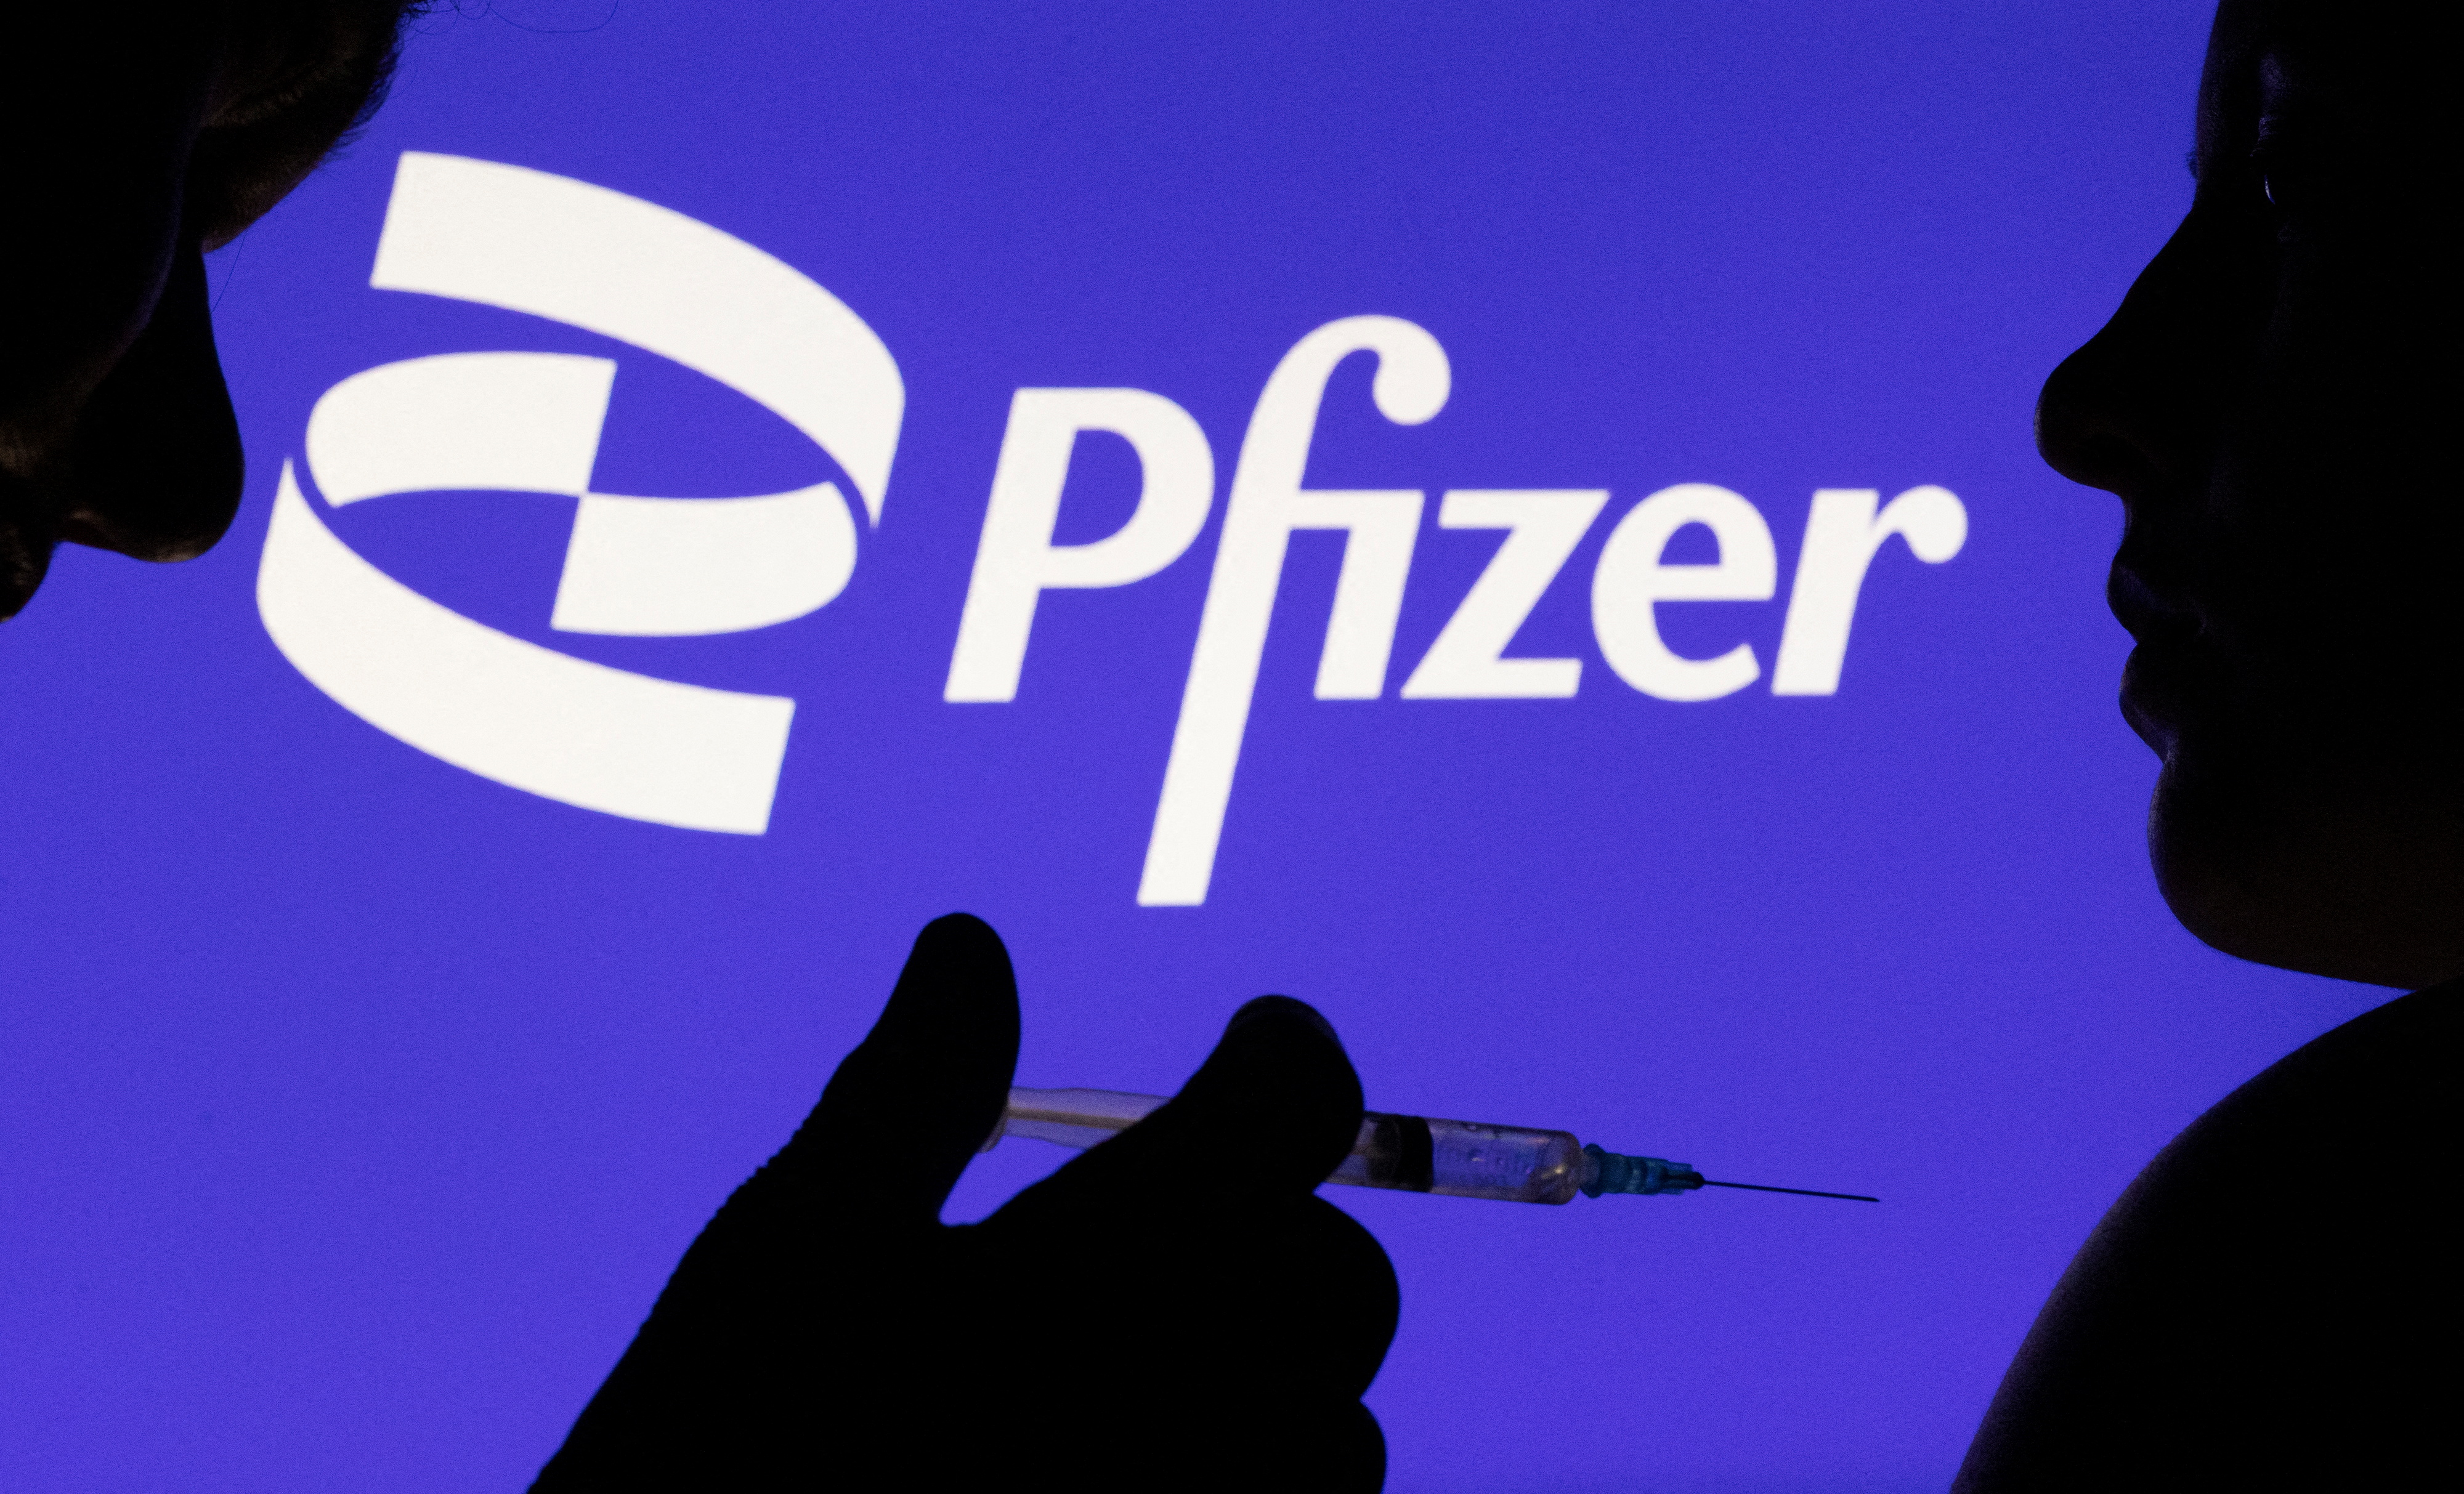 Des gens posent avec une seringue munie d'une aiguille devant le logo Pfizer affiché sur cette illustration prise le 11 décembre 2021. REUTERS/Dado Ruvic